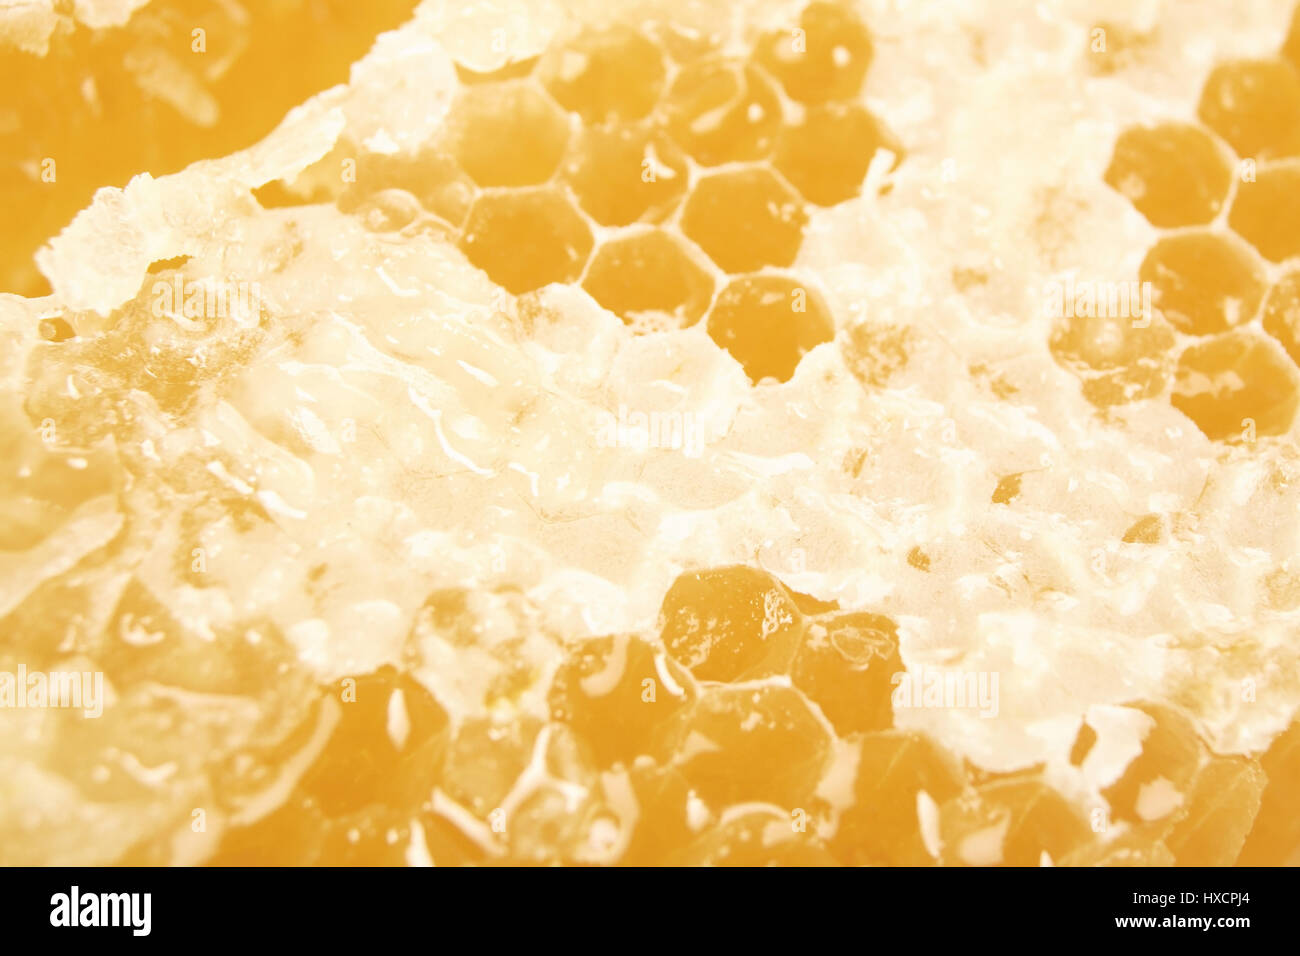 Close-up of a honeycomb, Close-up of a honeycomb |, Nahaufnahme einer Honigwabe |Close-up of a honeycomb| Stock Photo